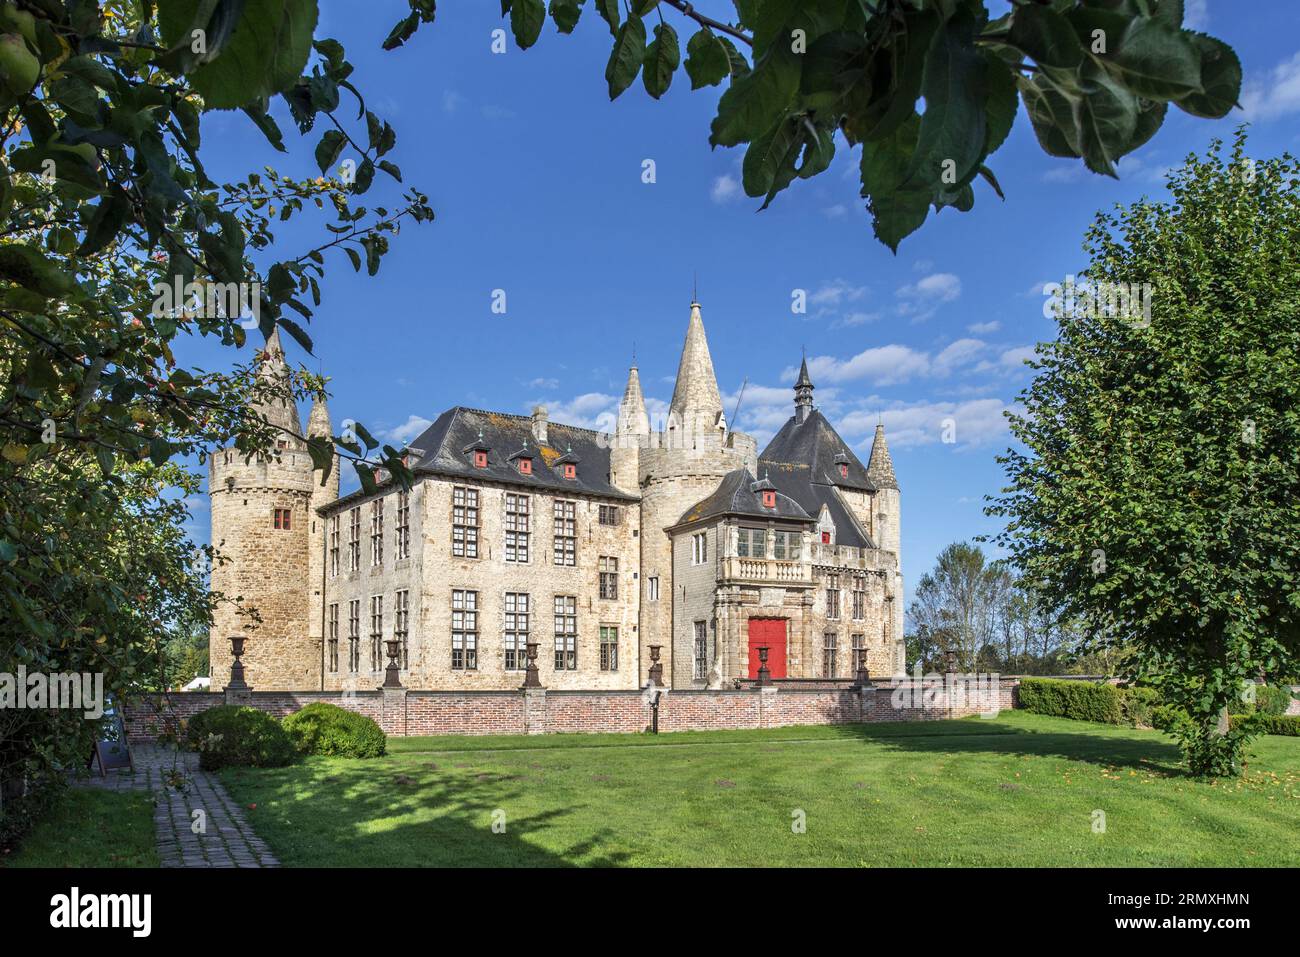 Kasteel van Laarne, medieval 14th -17th century moated castle near Ghent, East-Flanders, Belgium Stock Photo